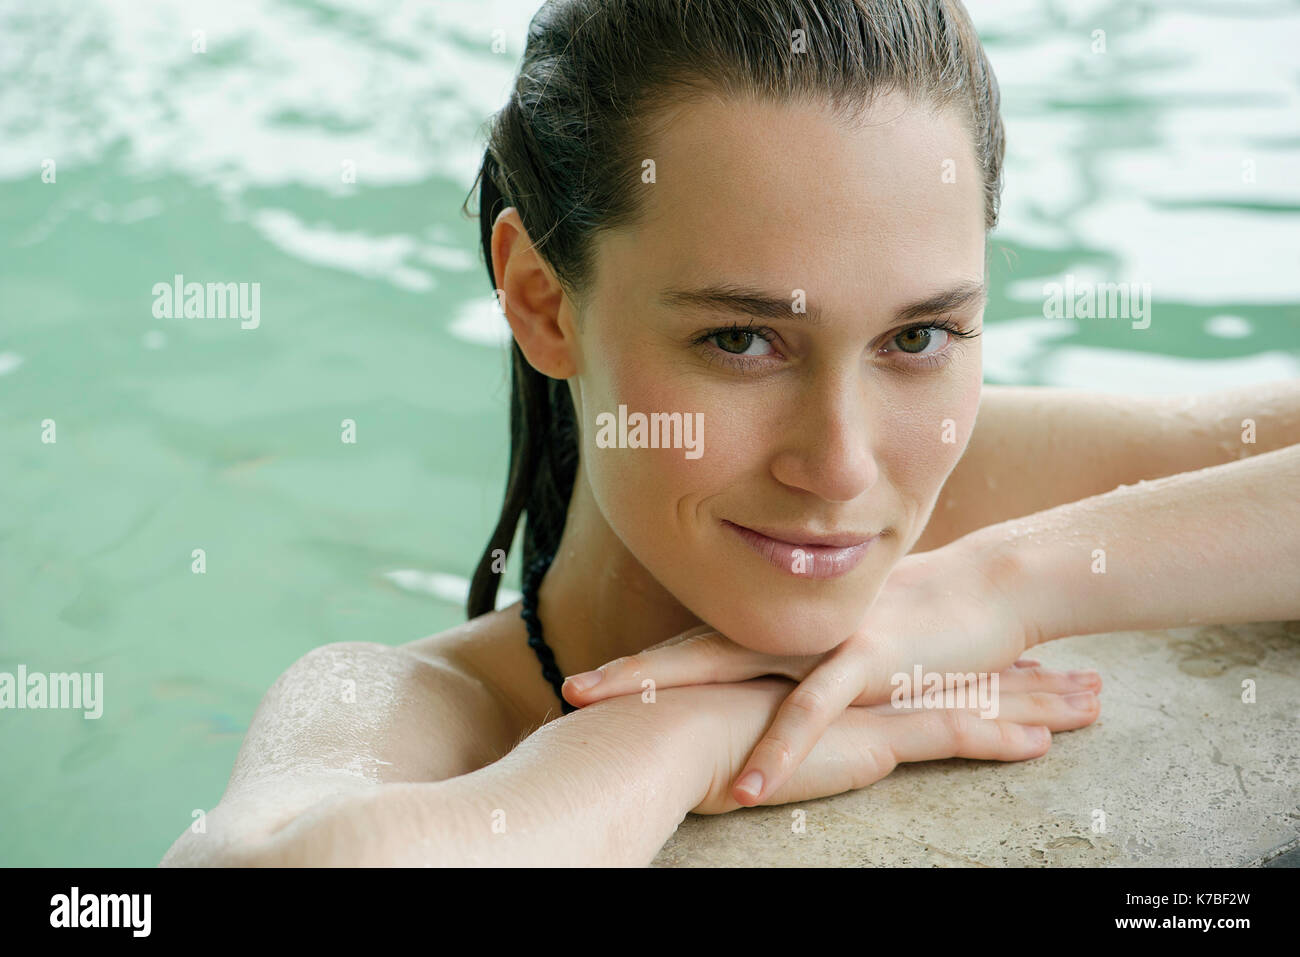 Frau in Swimming pool an Kante Kopf auf die Arme Stockfoto